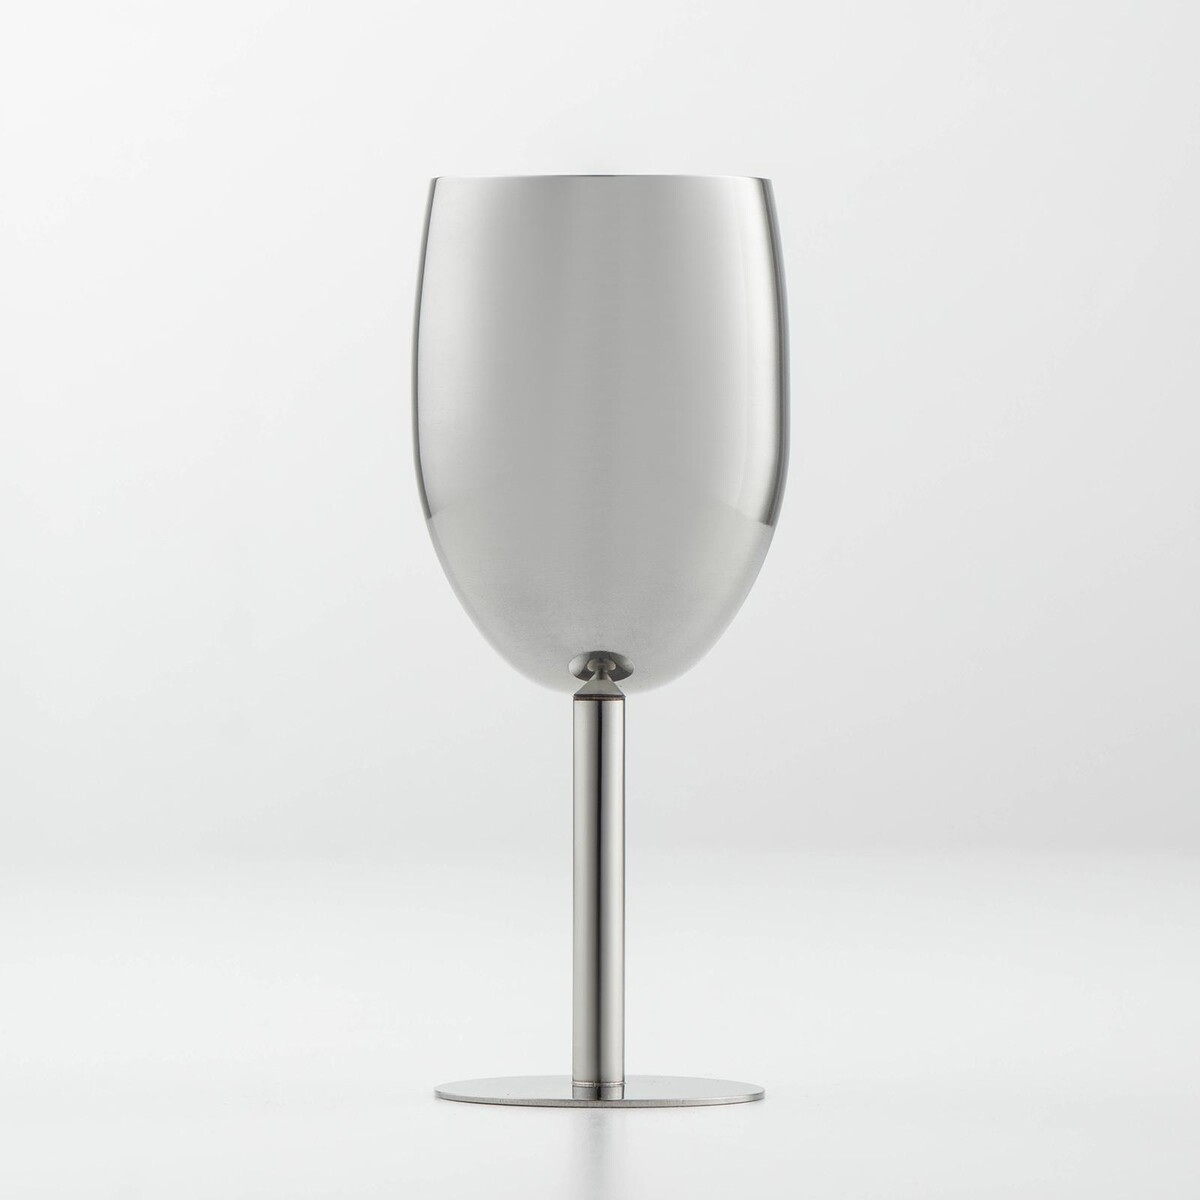 Бокал винный из нержавеющей стали для коктейлей, 17×7 см, цвет хромированный бокал для вина 350 мл стекло 6 шт luminarc signature j0012